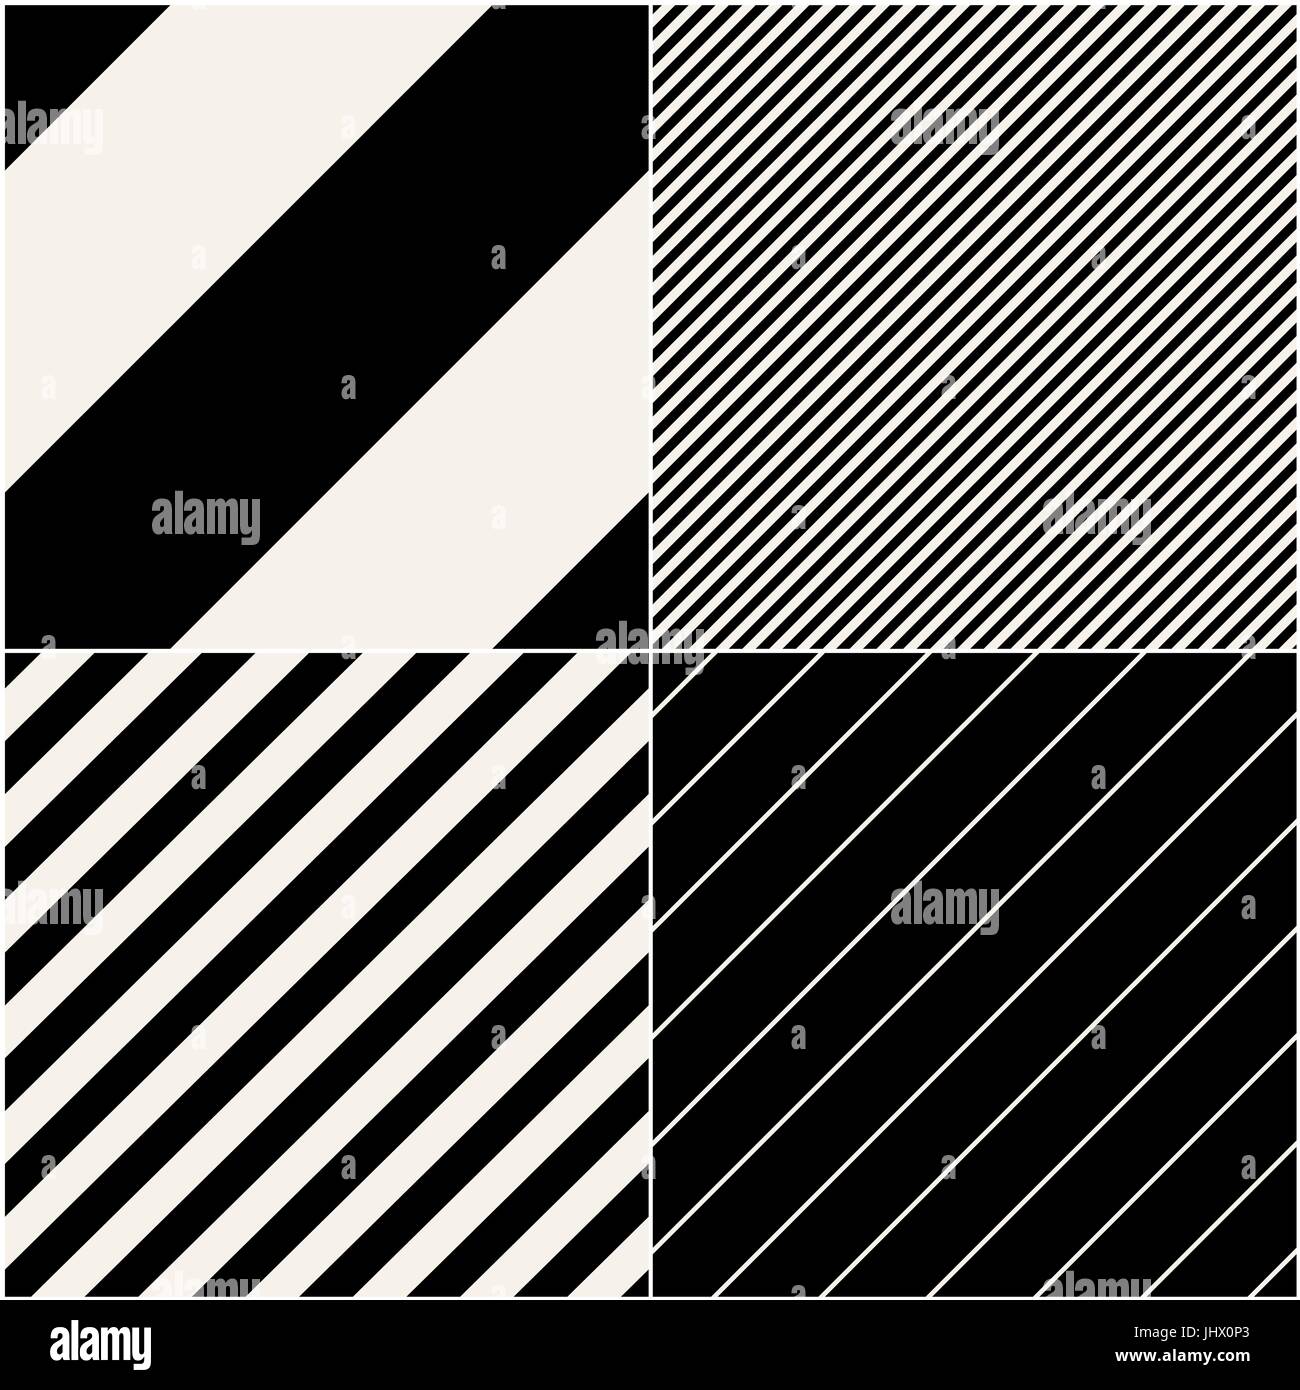 Cuatro patrones de diagonal colección. Las líneas diagonales perfecta patrón blanco y negro. Repetir bandas monocromas recto textura del fondo. V geométrica Ilustración del Vector